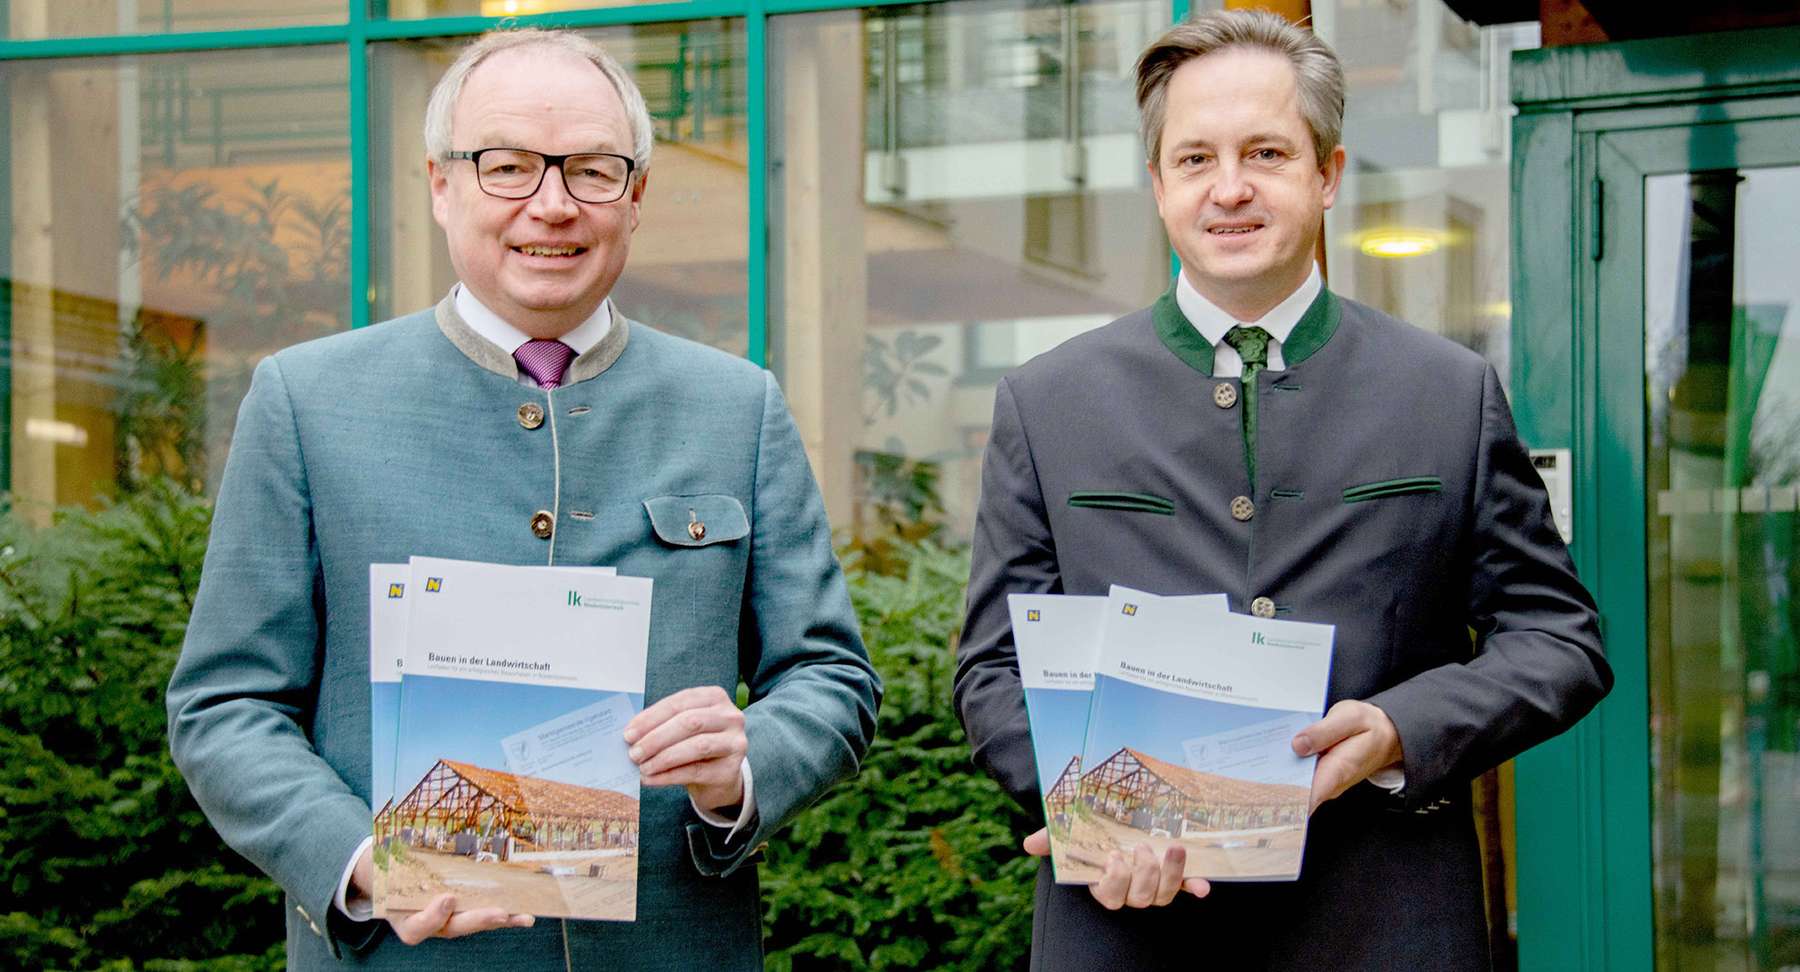 LH-Stellvertreter Stephan Pernkopf und LK NÖ-Präsident Johannes Schmuckenschlager präsentieren die Neuauflage der Broschüre "Bauen in der Landwirtschaft"